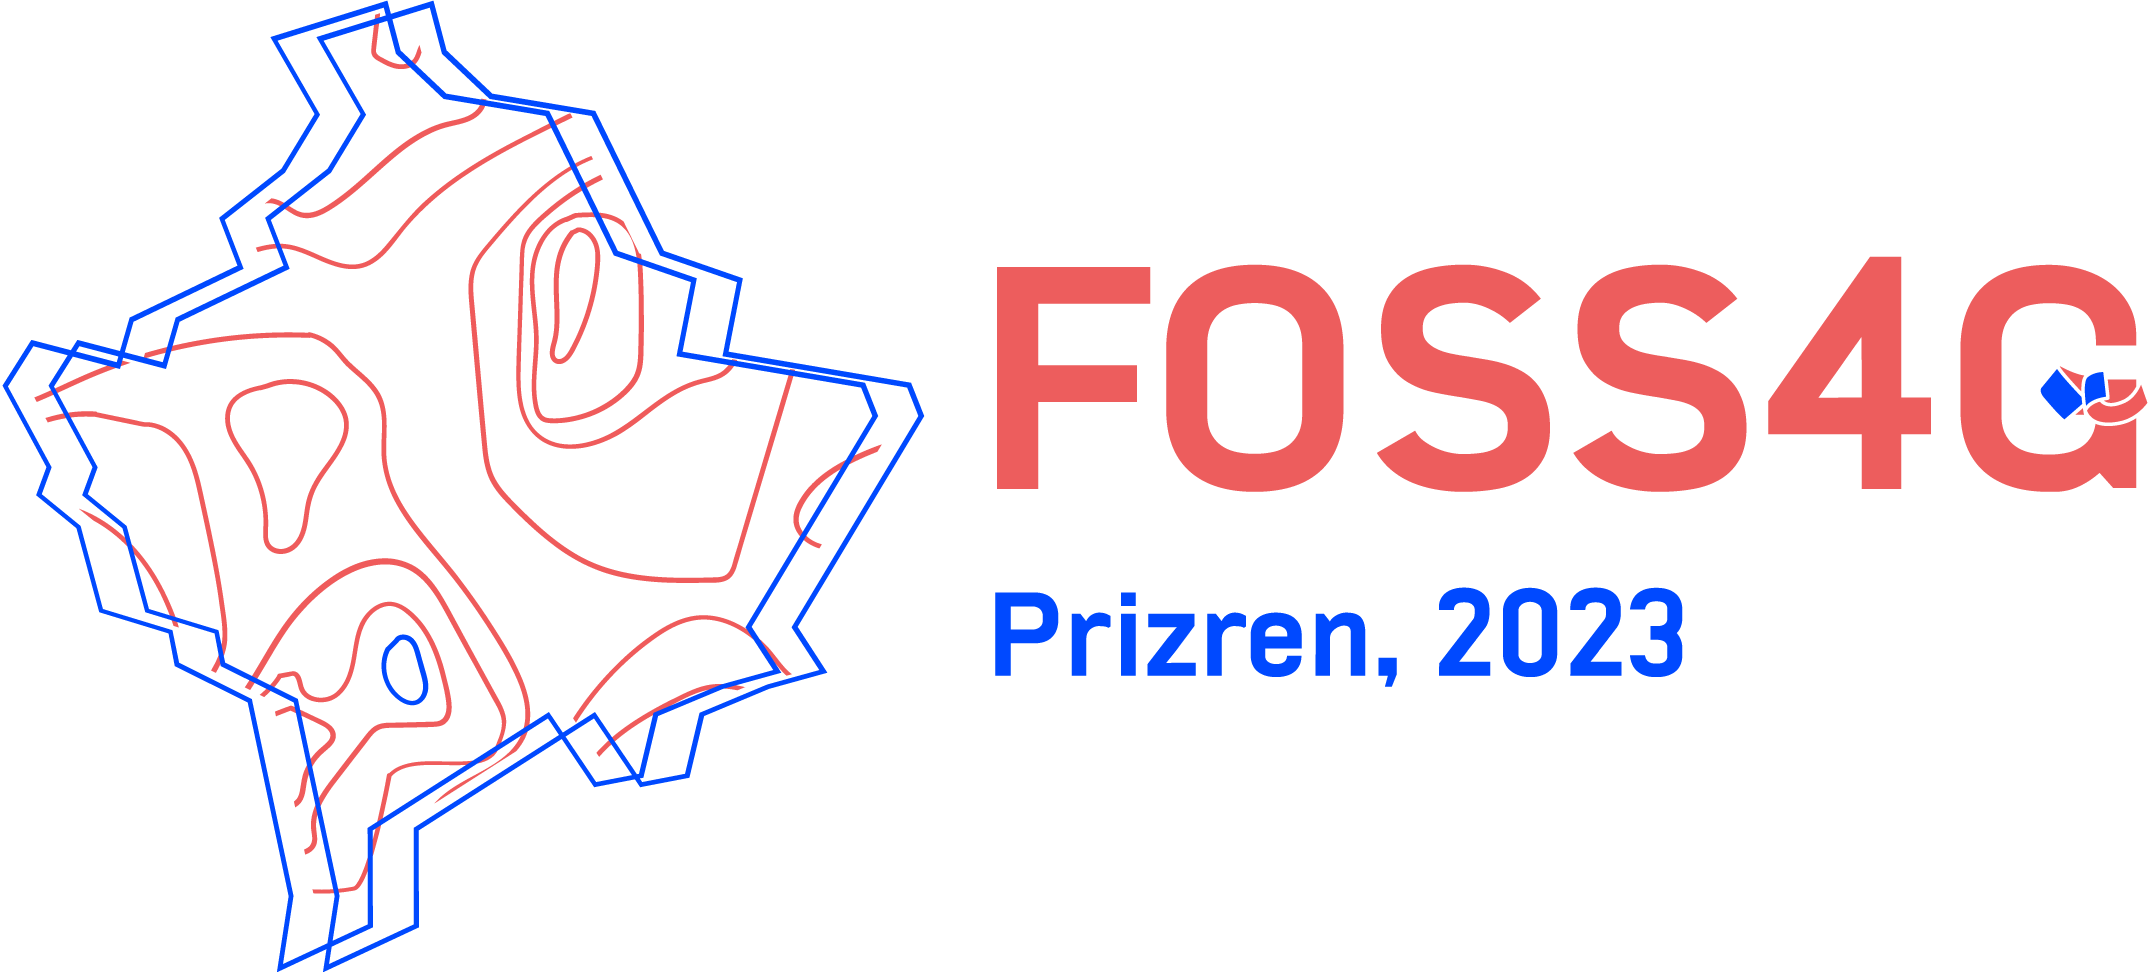 FOSS4G 2023